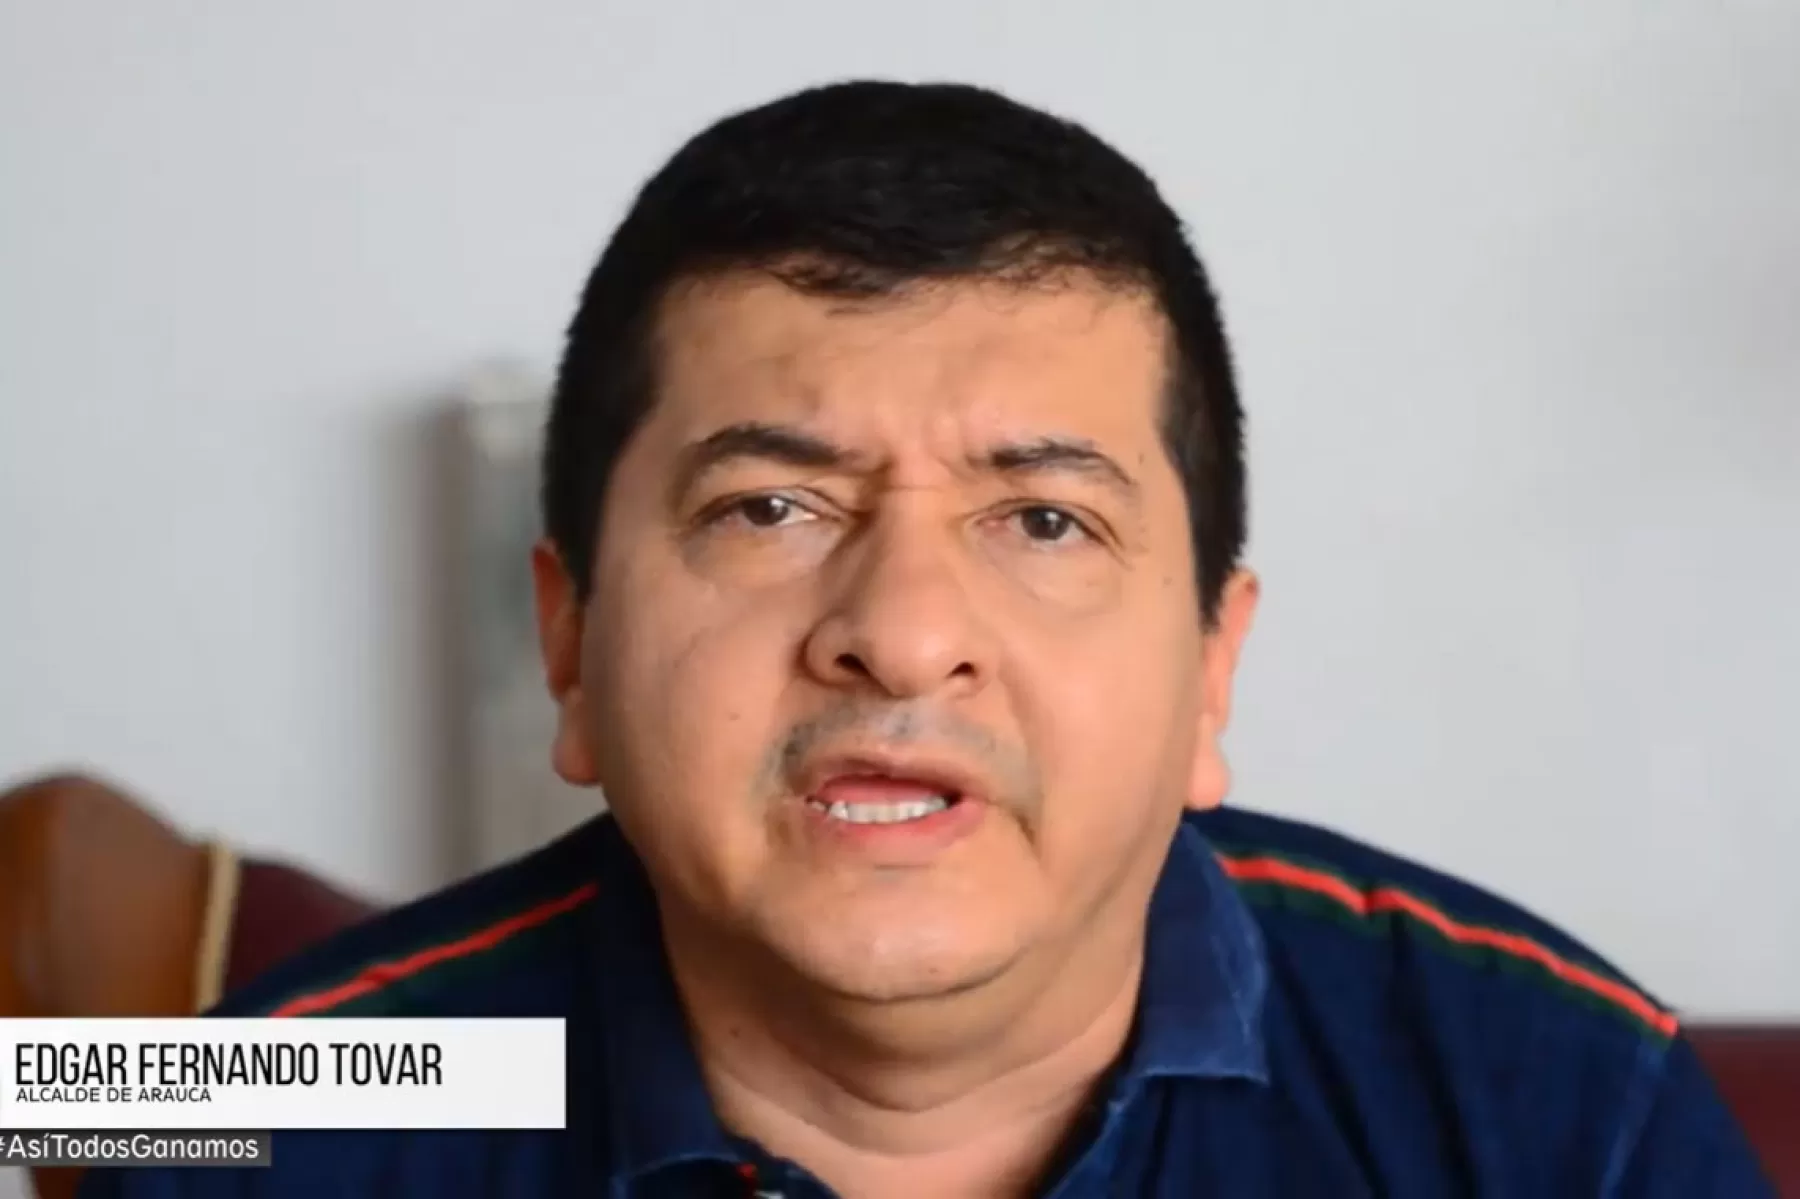 Alcalde de Arauca, alcalde Edgar Fernándo Tovar, tomó la medida a través del Decreto 0335 del 25 de marzo de 2020 y será por seis meses prorrogables